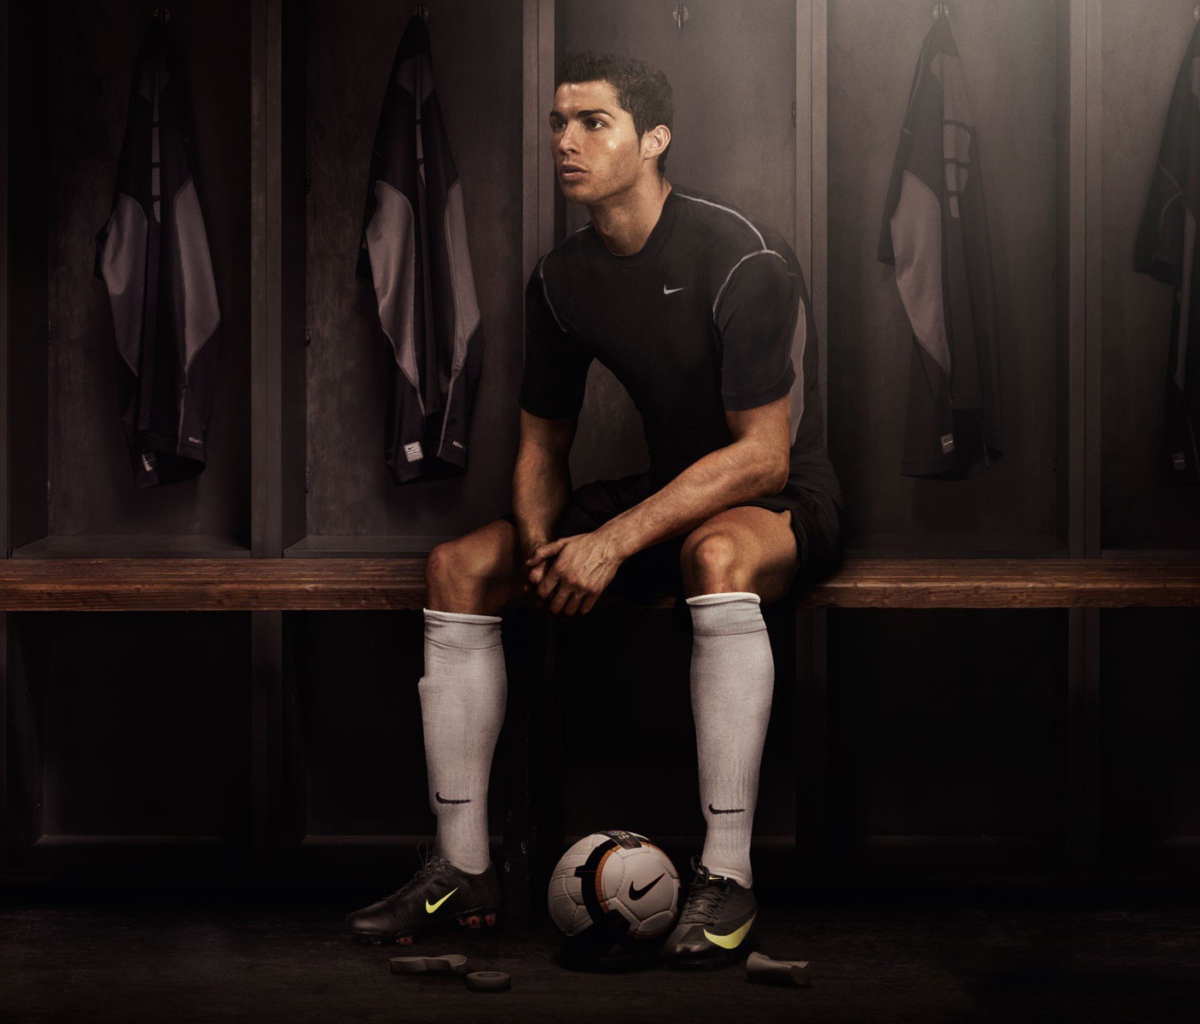 Cristiano Ronaldo wallpaper 1200x1024